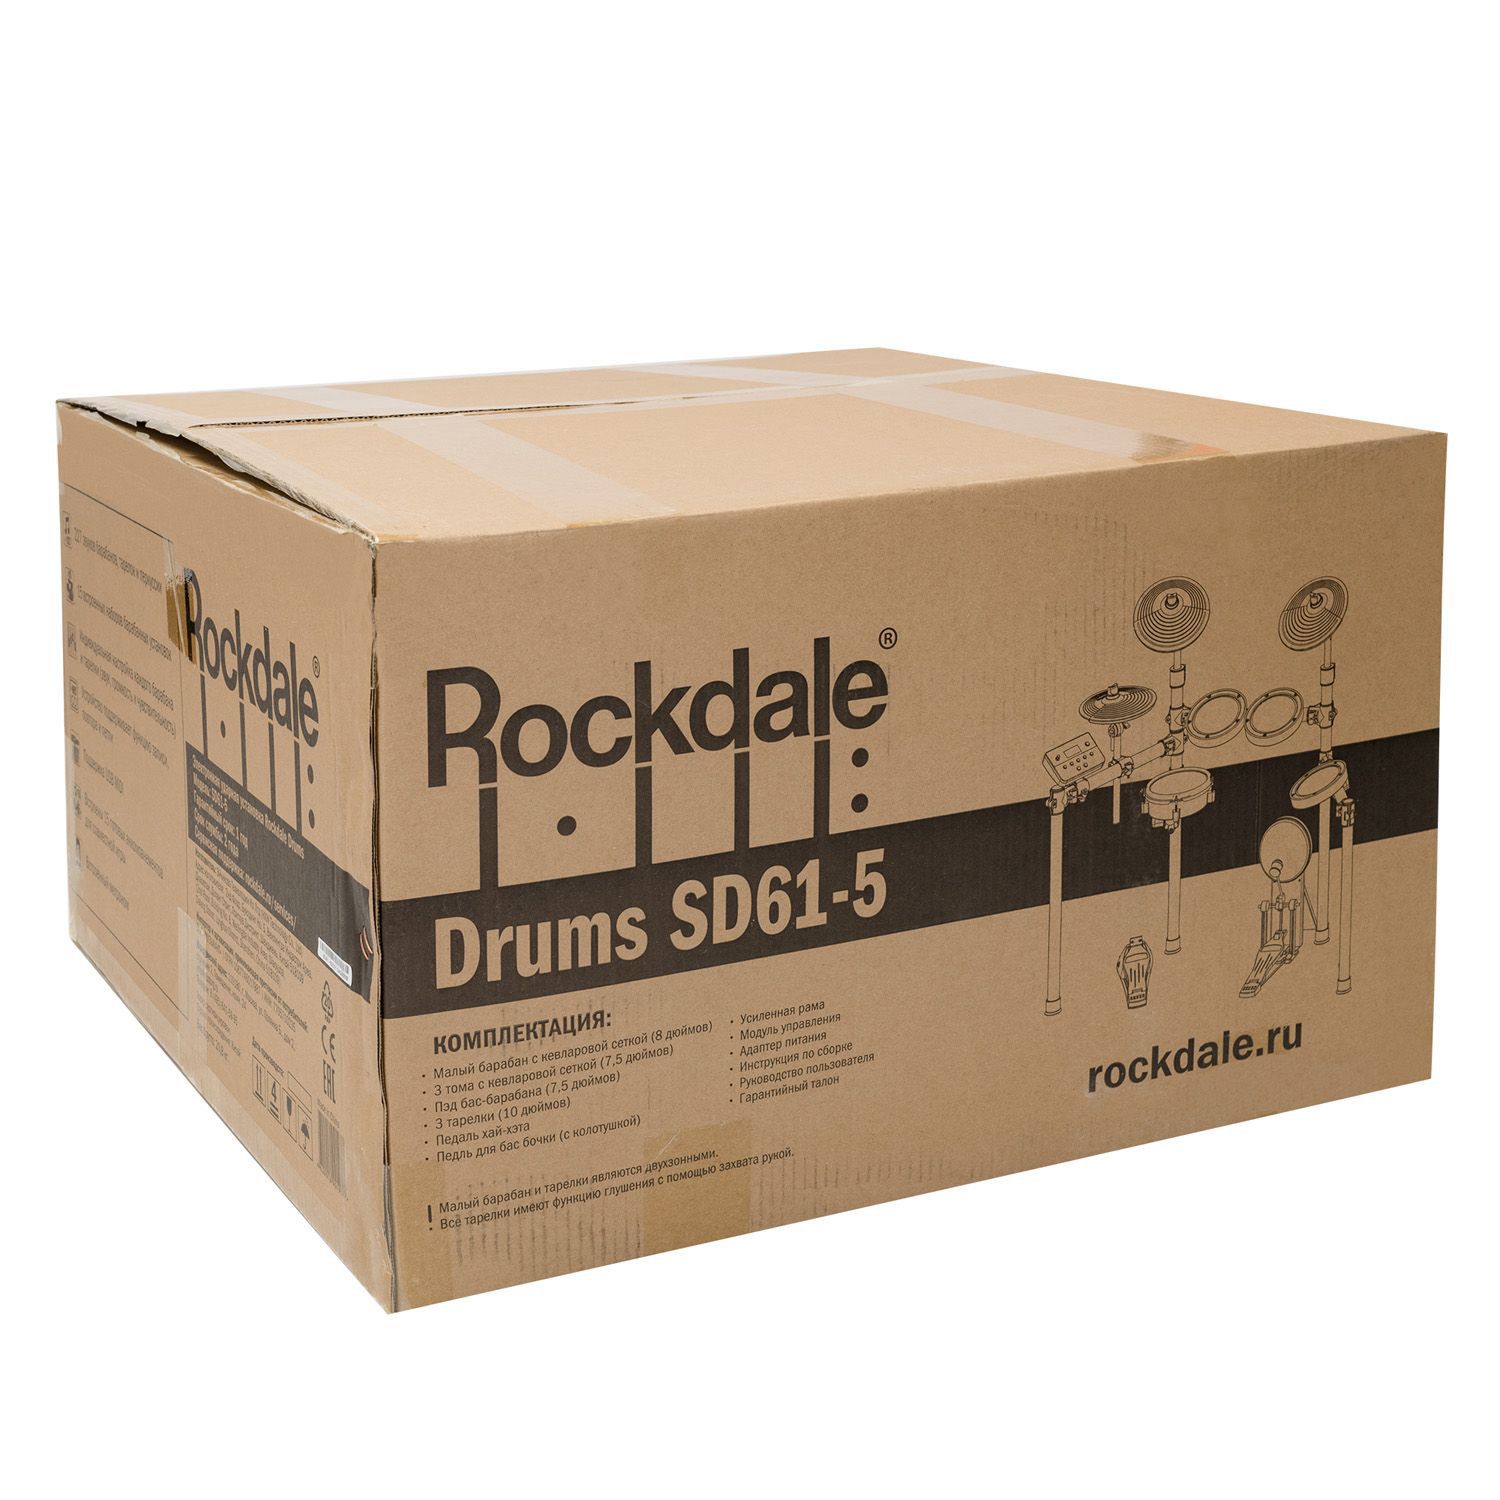 Rockdale DRUMS SD61-5 Электронные ударные установки, комплекты